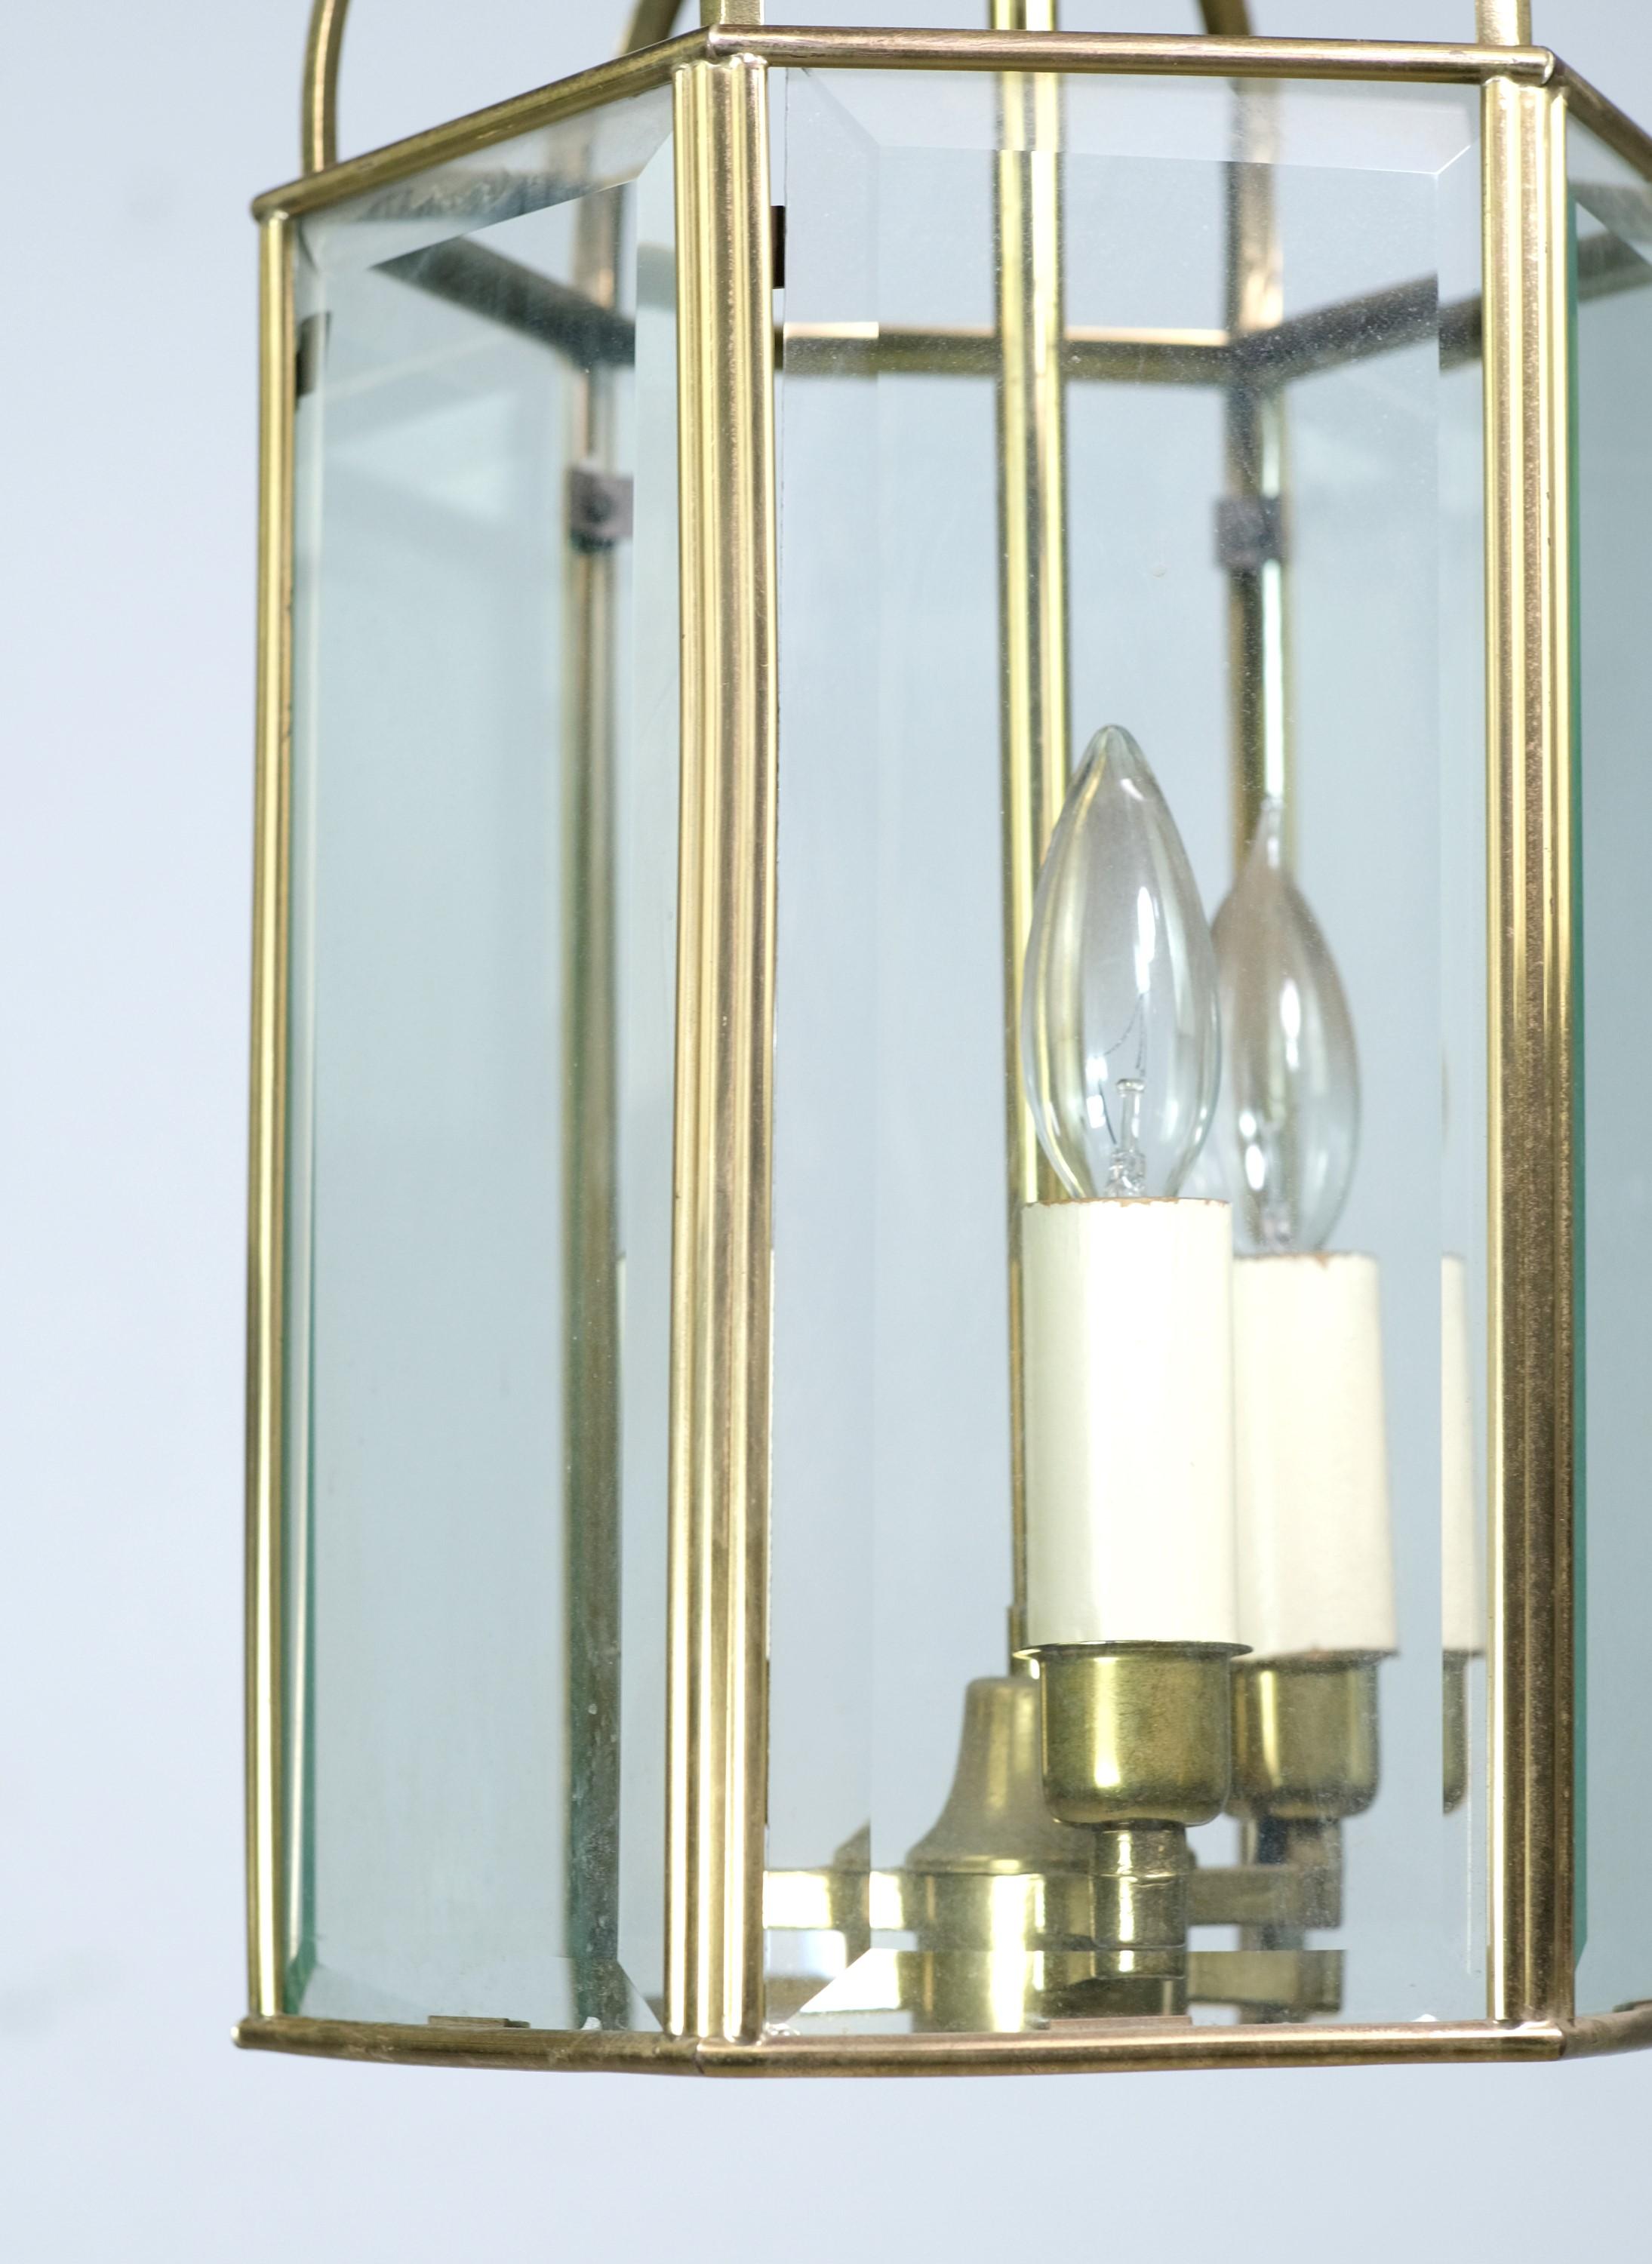 Bass-Pendelleuchte aus dem 20. Jahrhundert mit sechs abgeschrägten Glasscheiben, die in einem sechseckigen Muster angeordnet sind. Für drei handelsübliche Glühbirnen mit Kandelabersockel geeignet. Gereinigt und restauriert. Bitte beachten Sie,